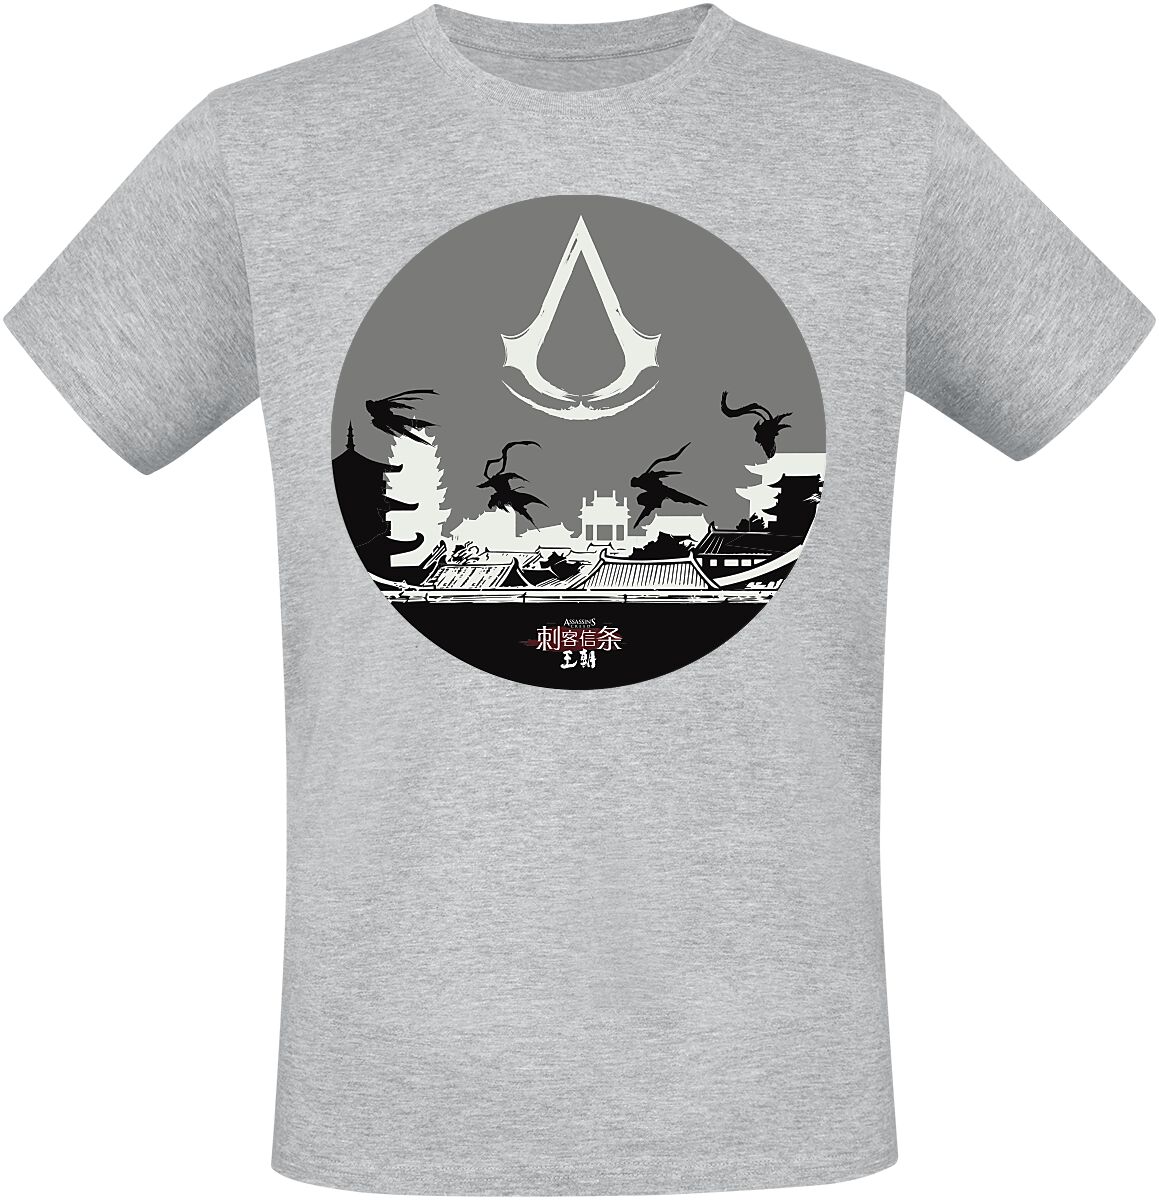 Assassin`s Creed - Gaming T-Shirt - Dynasty - Circle - S bis L - für Männer - Größe S - grau meliert  - EMP exklusives Merchandise!